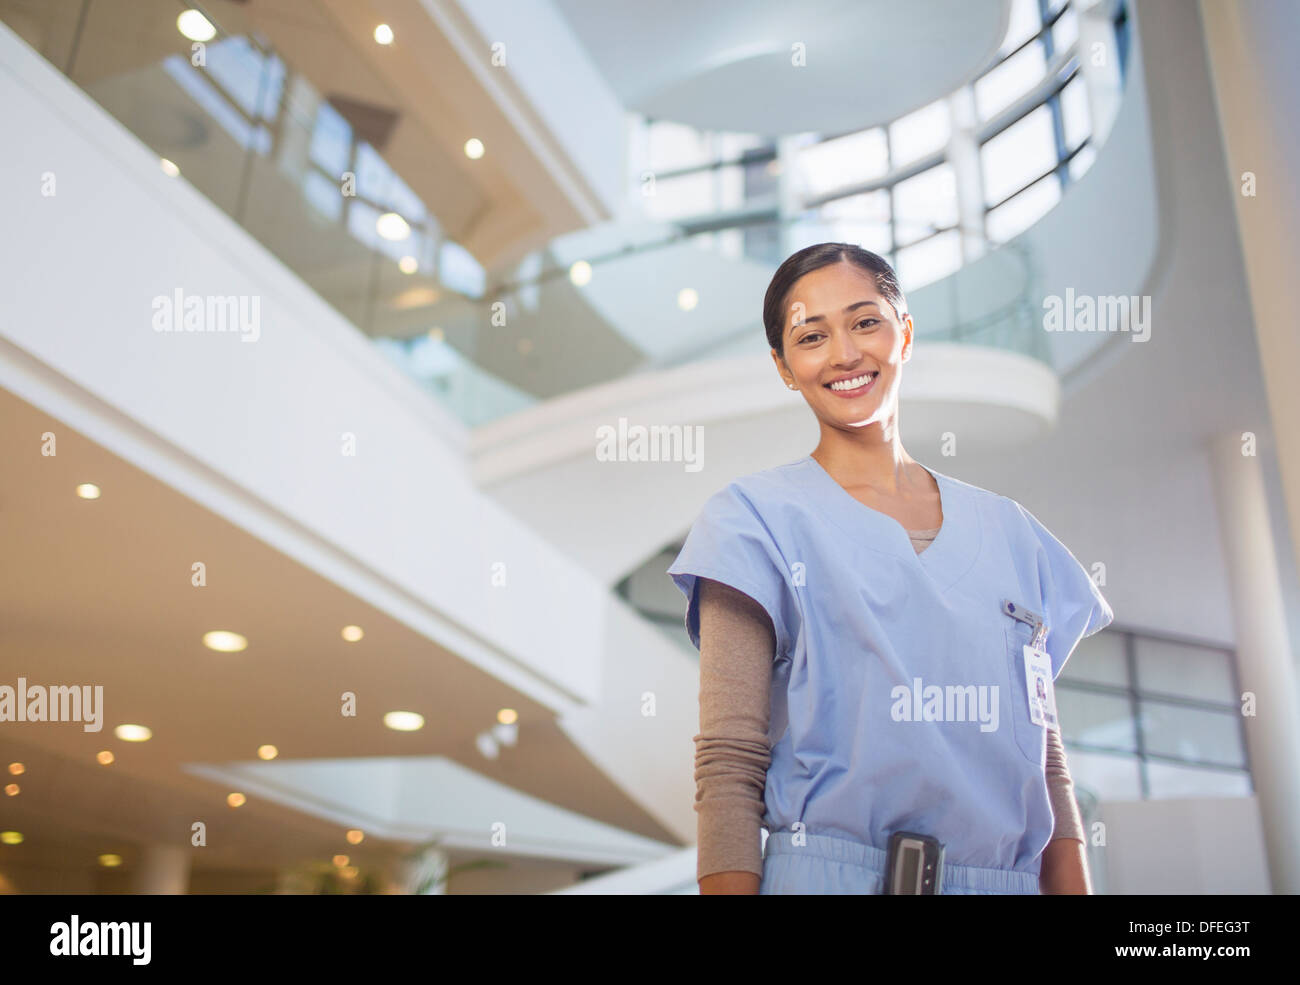 Portrait of smiling nurse in hospital atrium Stock Photo